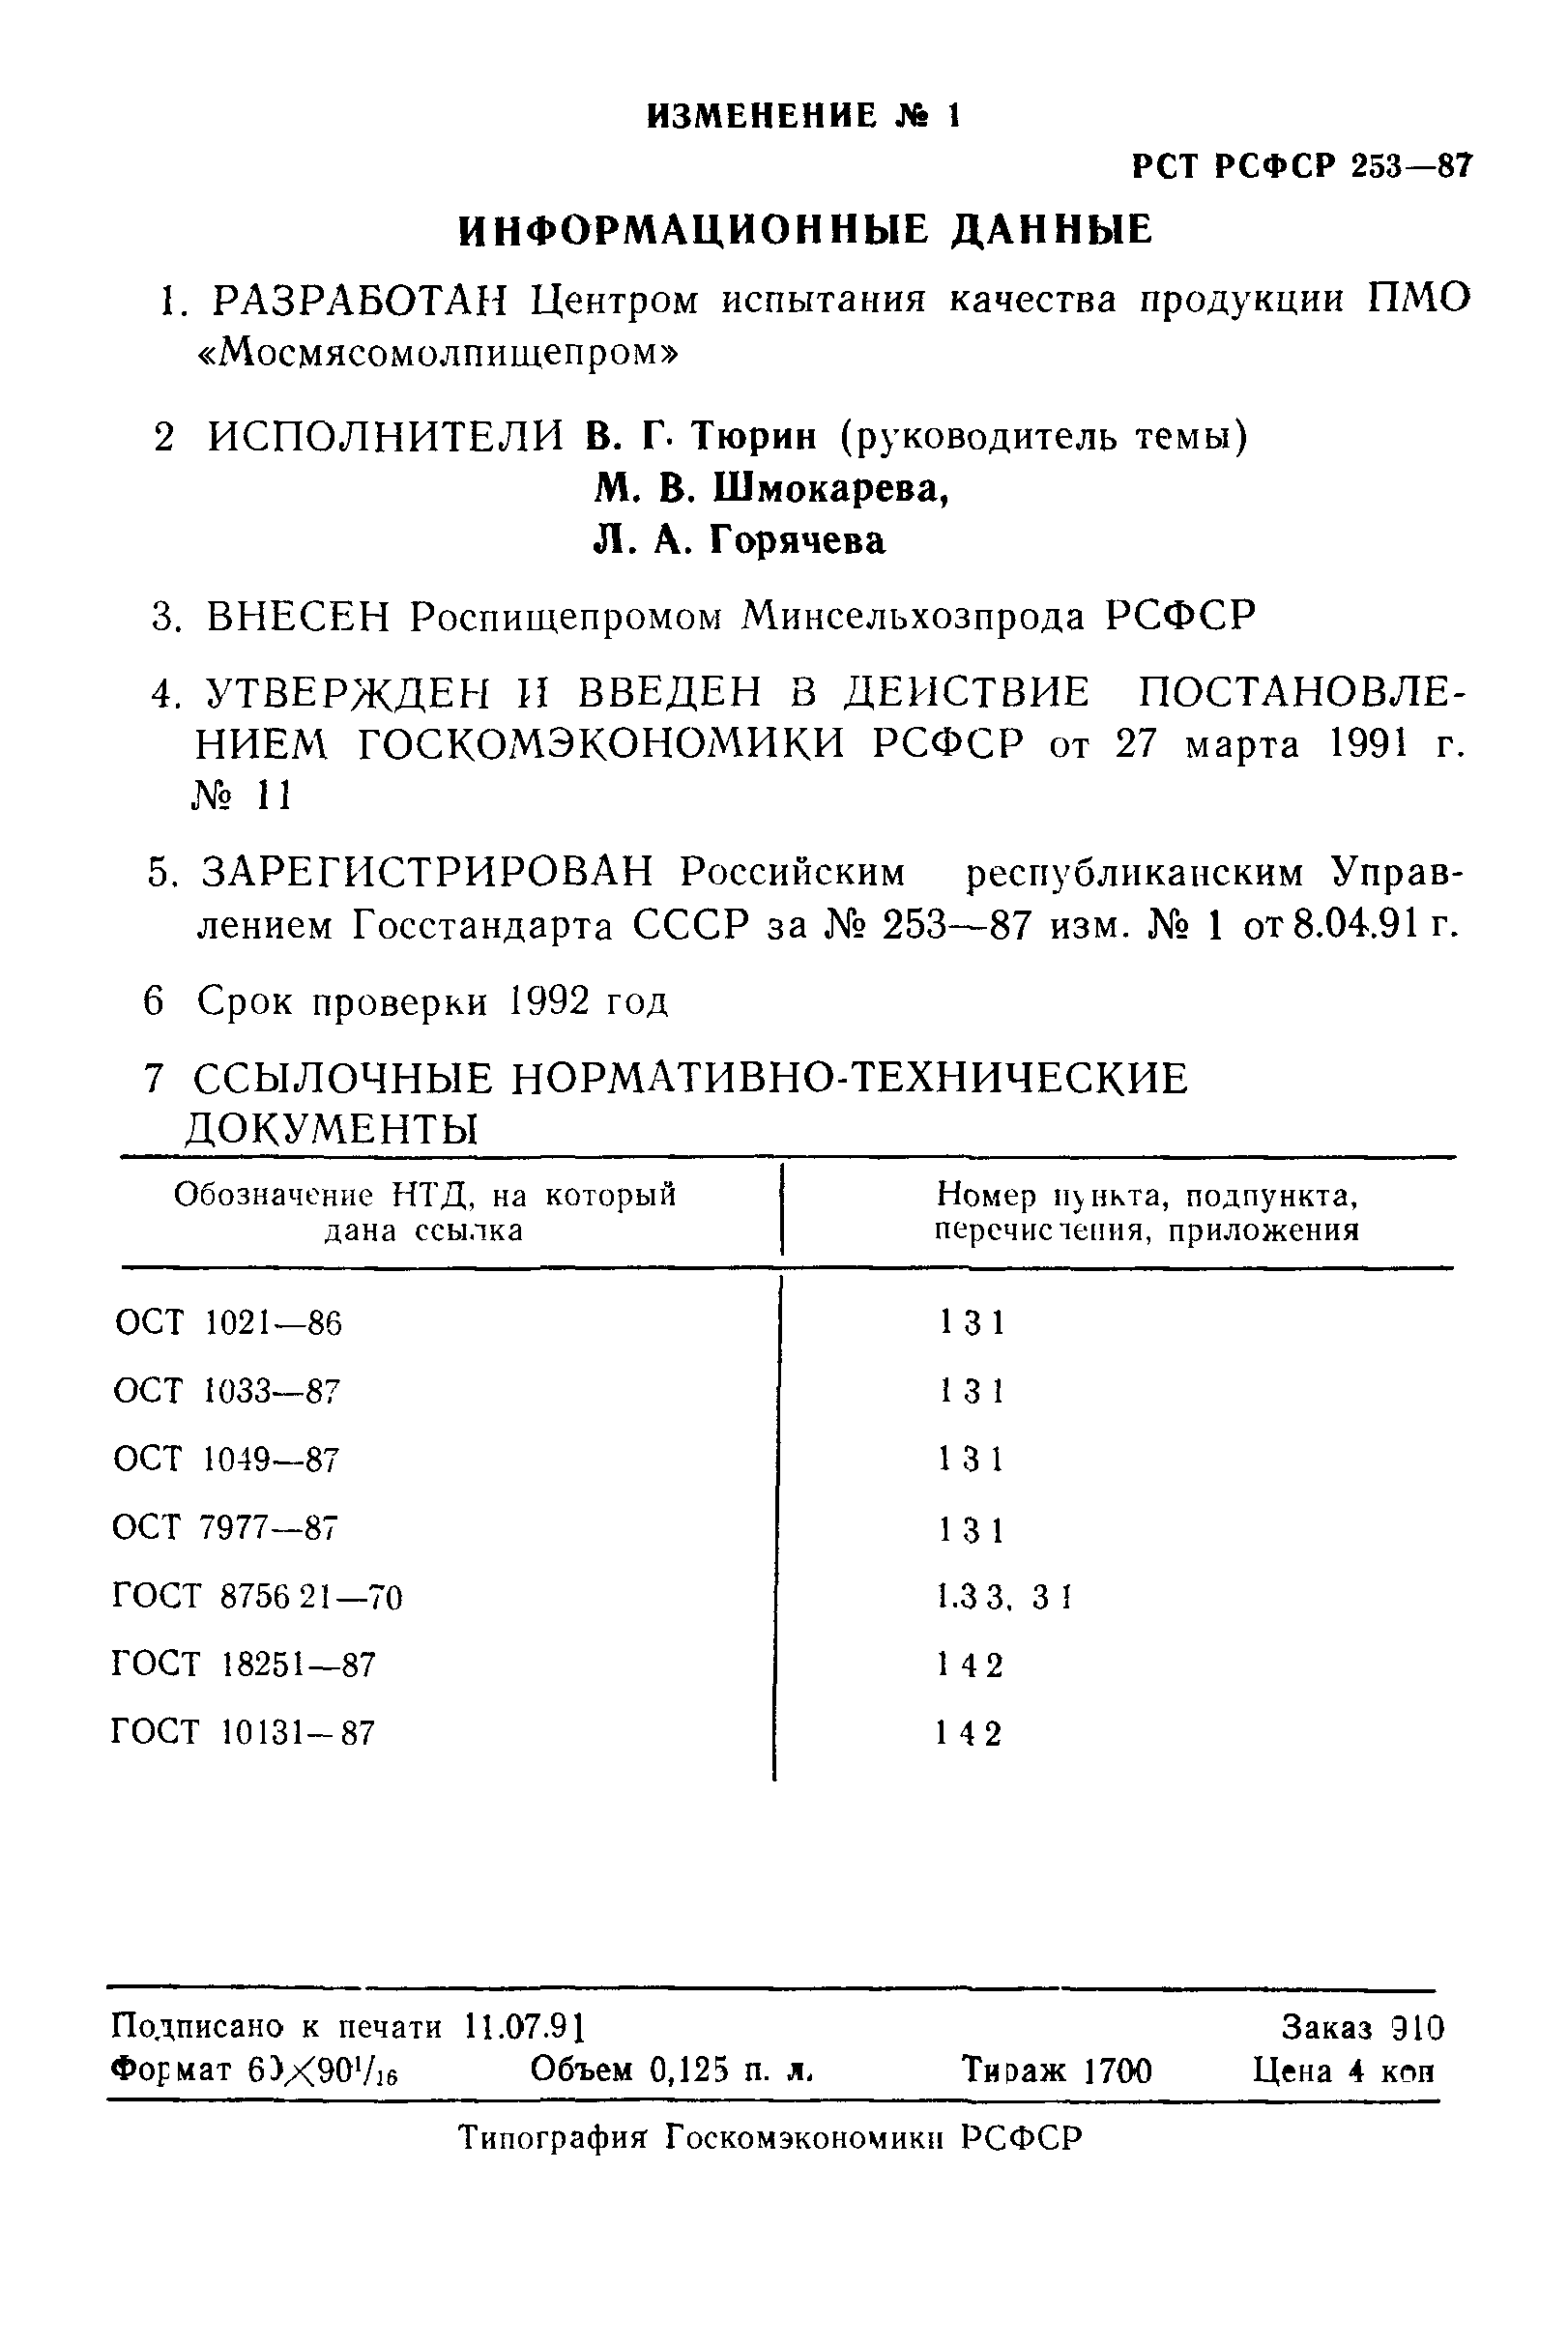 РСТ РСФСР 253-87